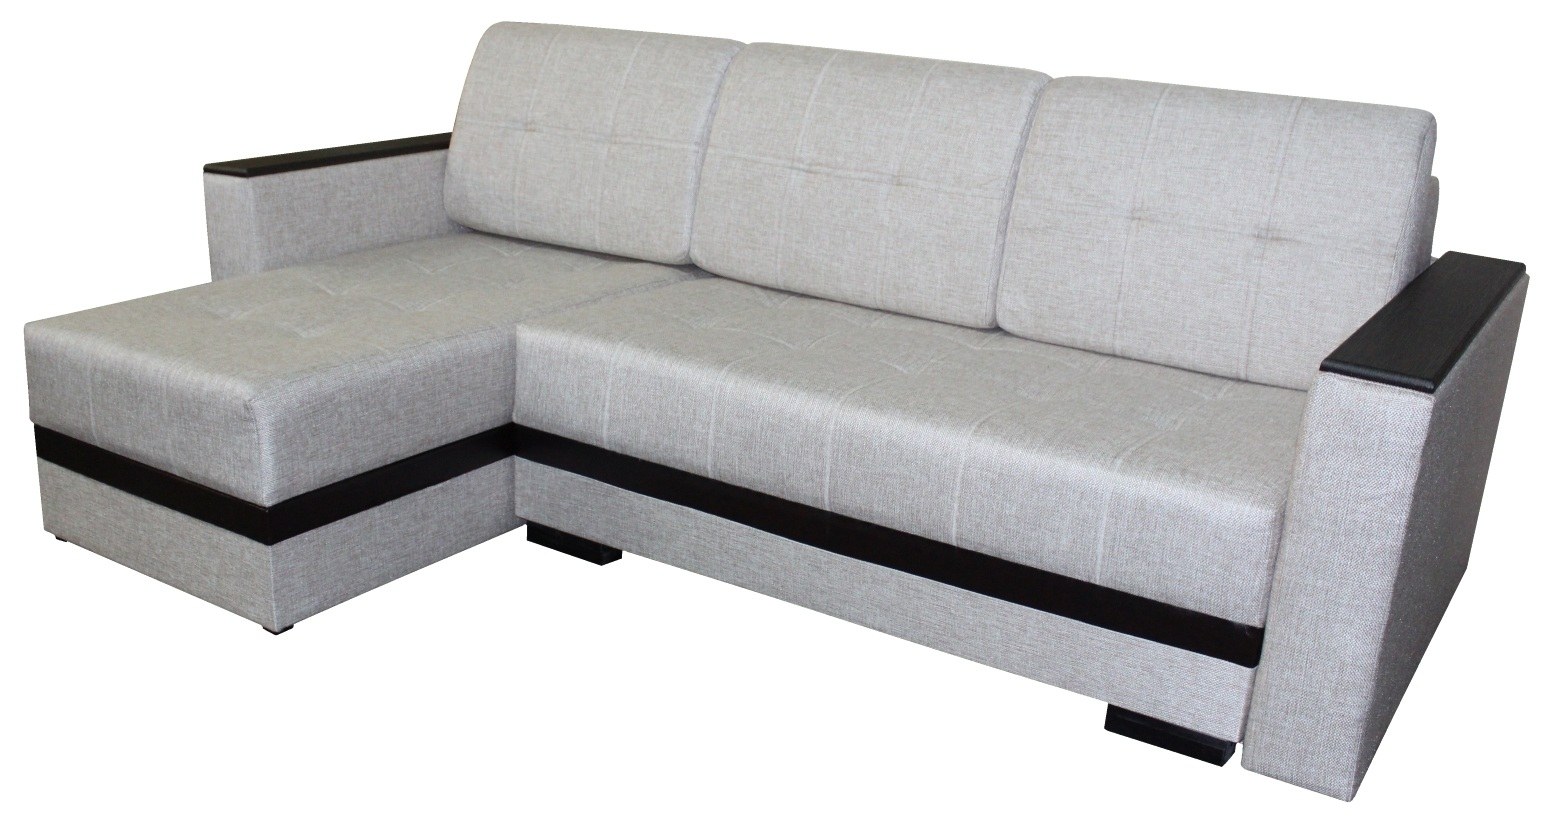 Купить угловой диван недорого от производителя распродажа. Диван много мебели угловой Атланта 2.90. Диван угловой "Атланта Соло Гранд". Диван Атлант 2 со столиком.